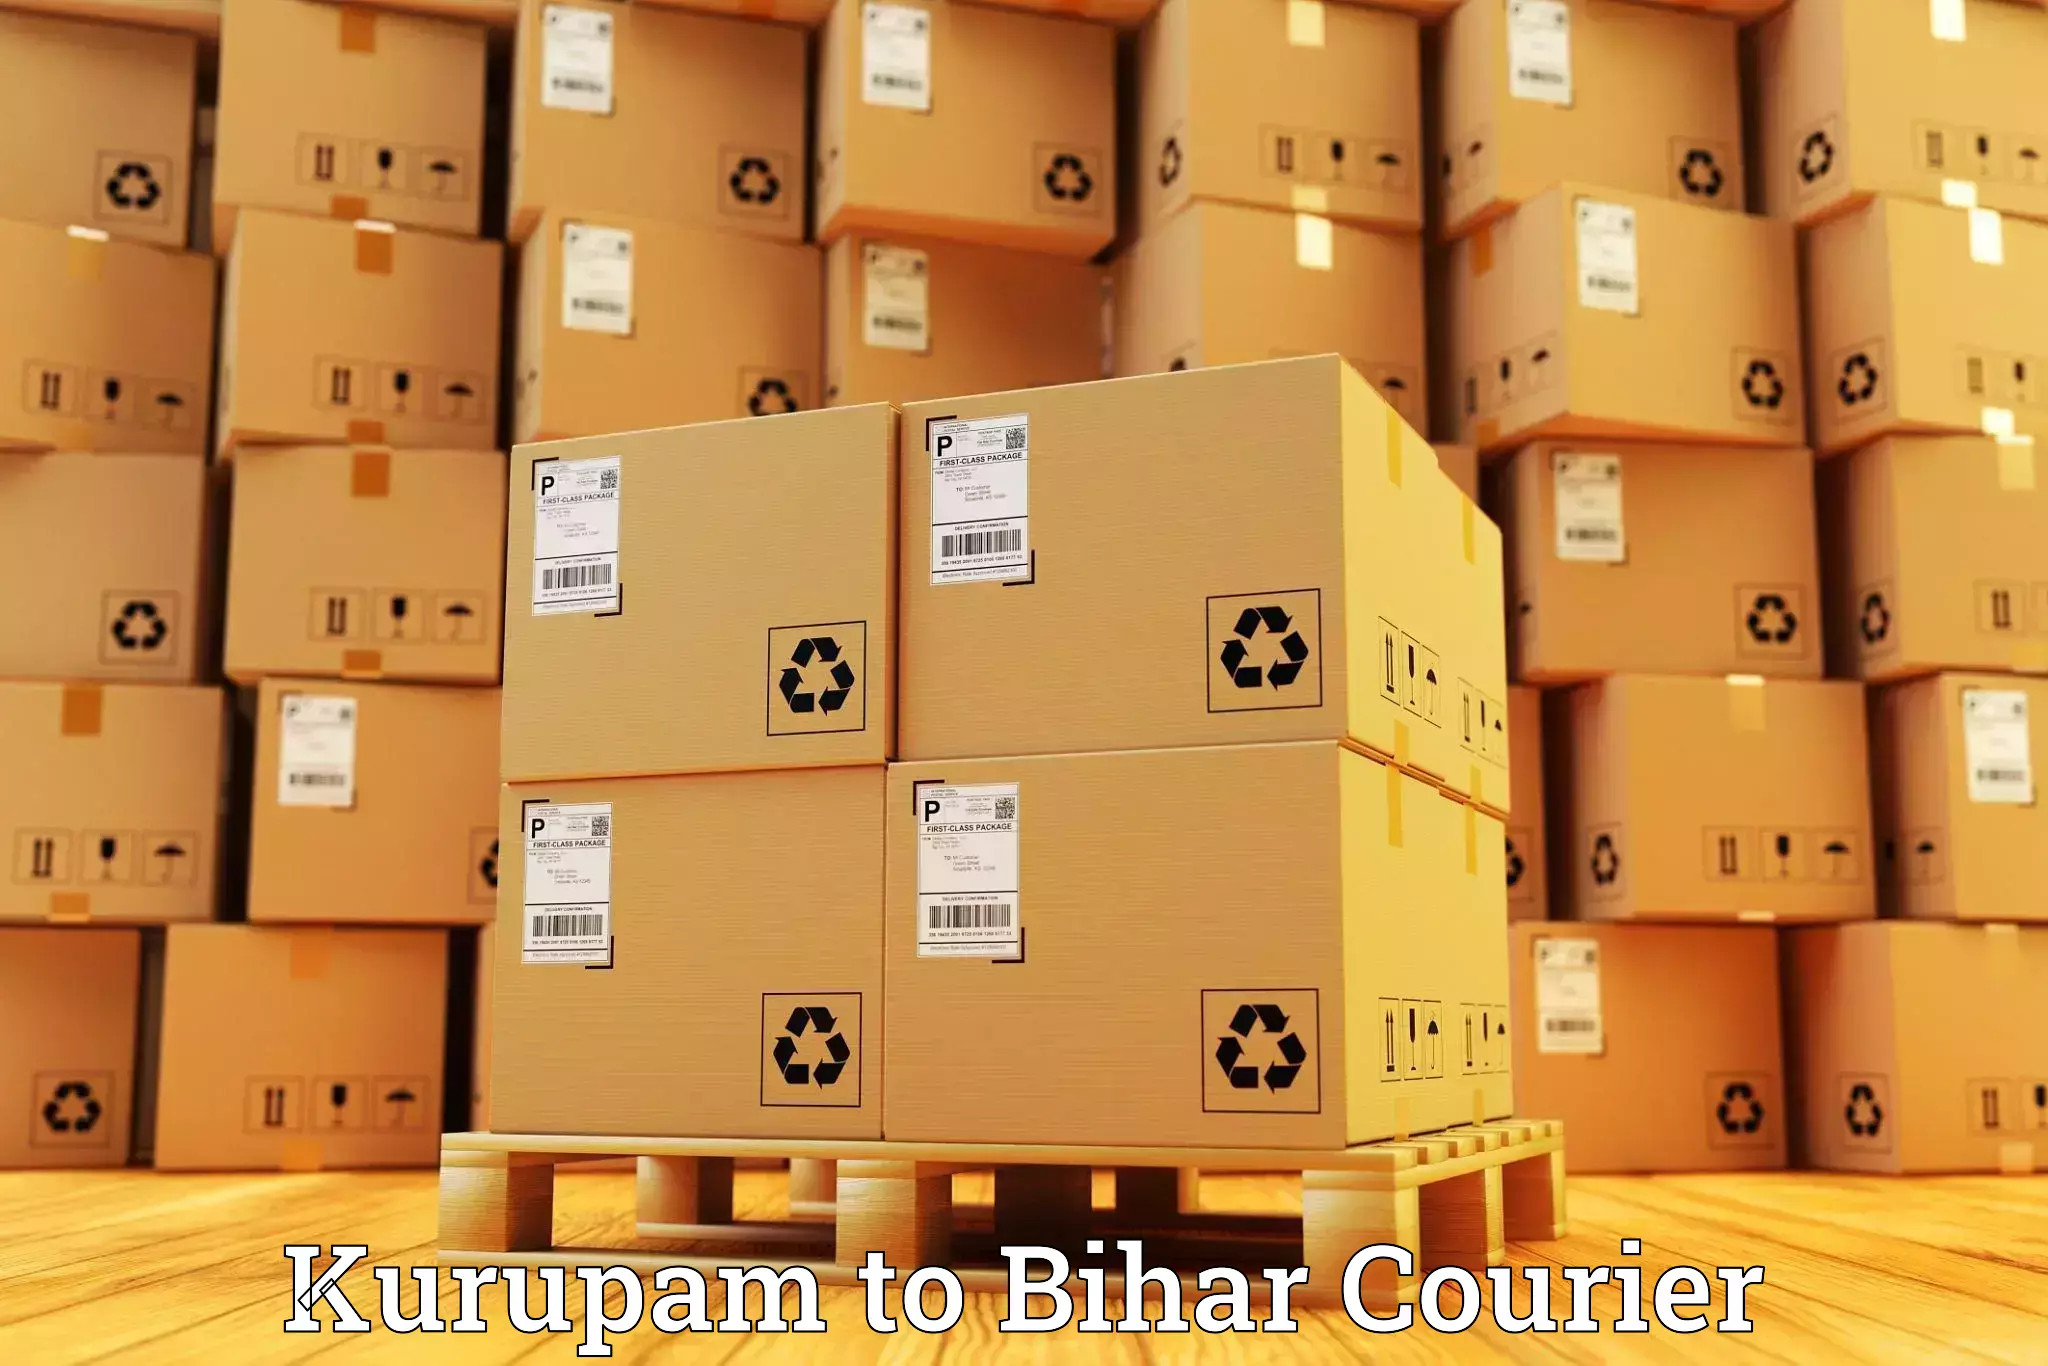 Customer-centric shipping Kurupam to Muzaffarpur